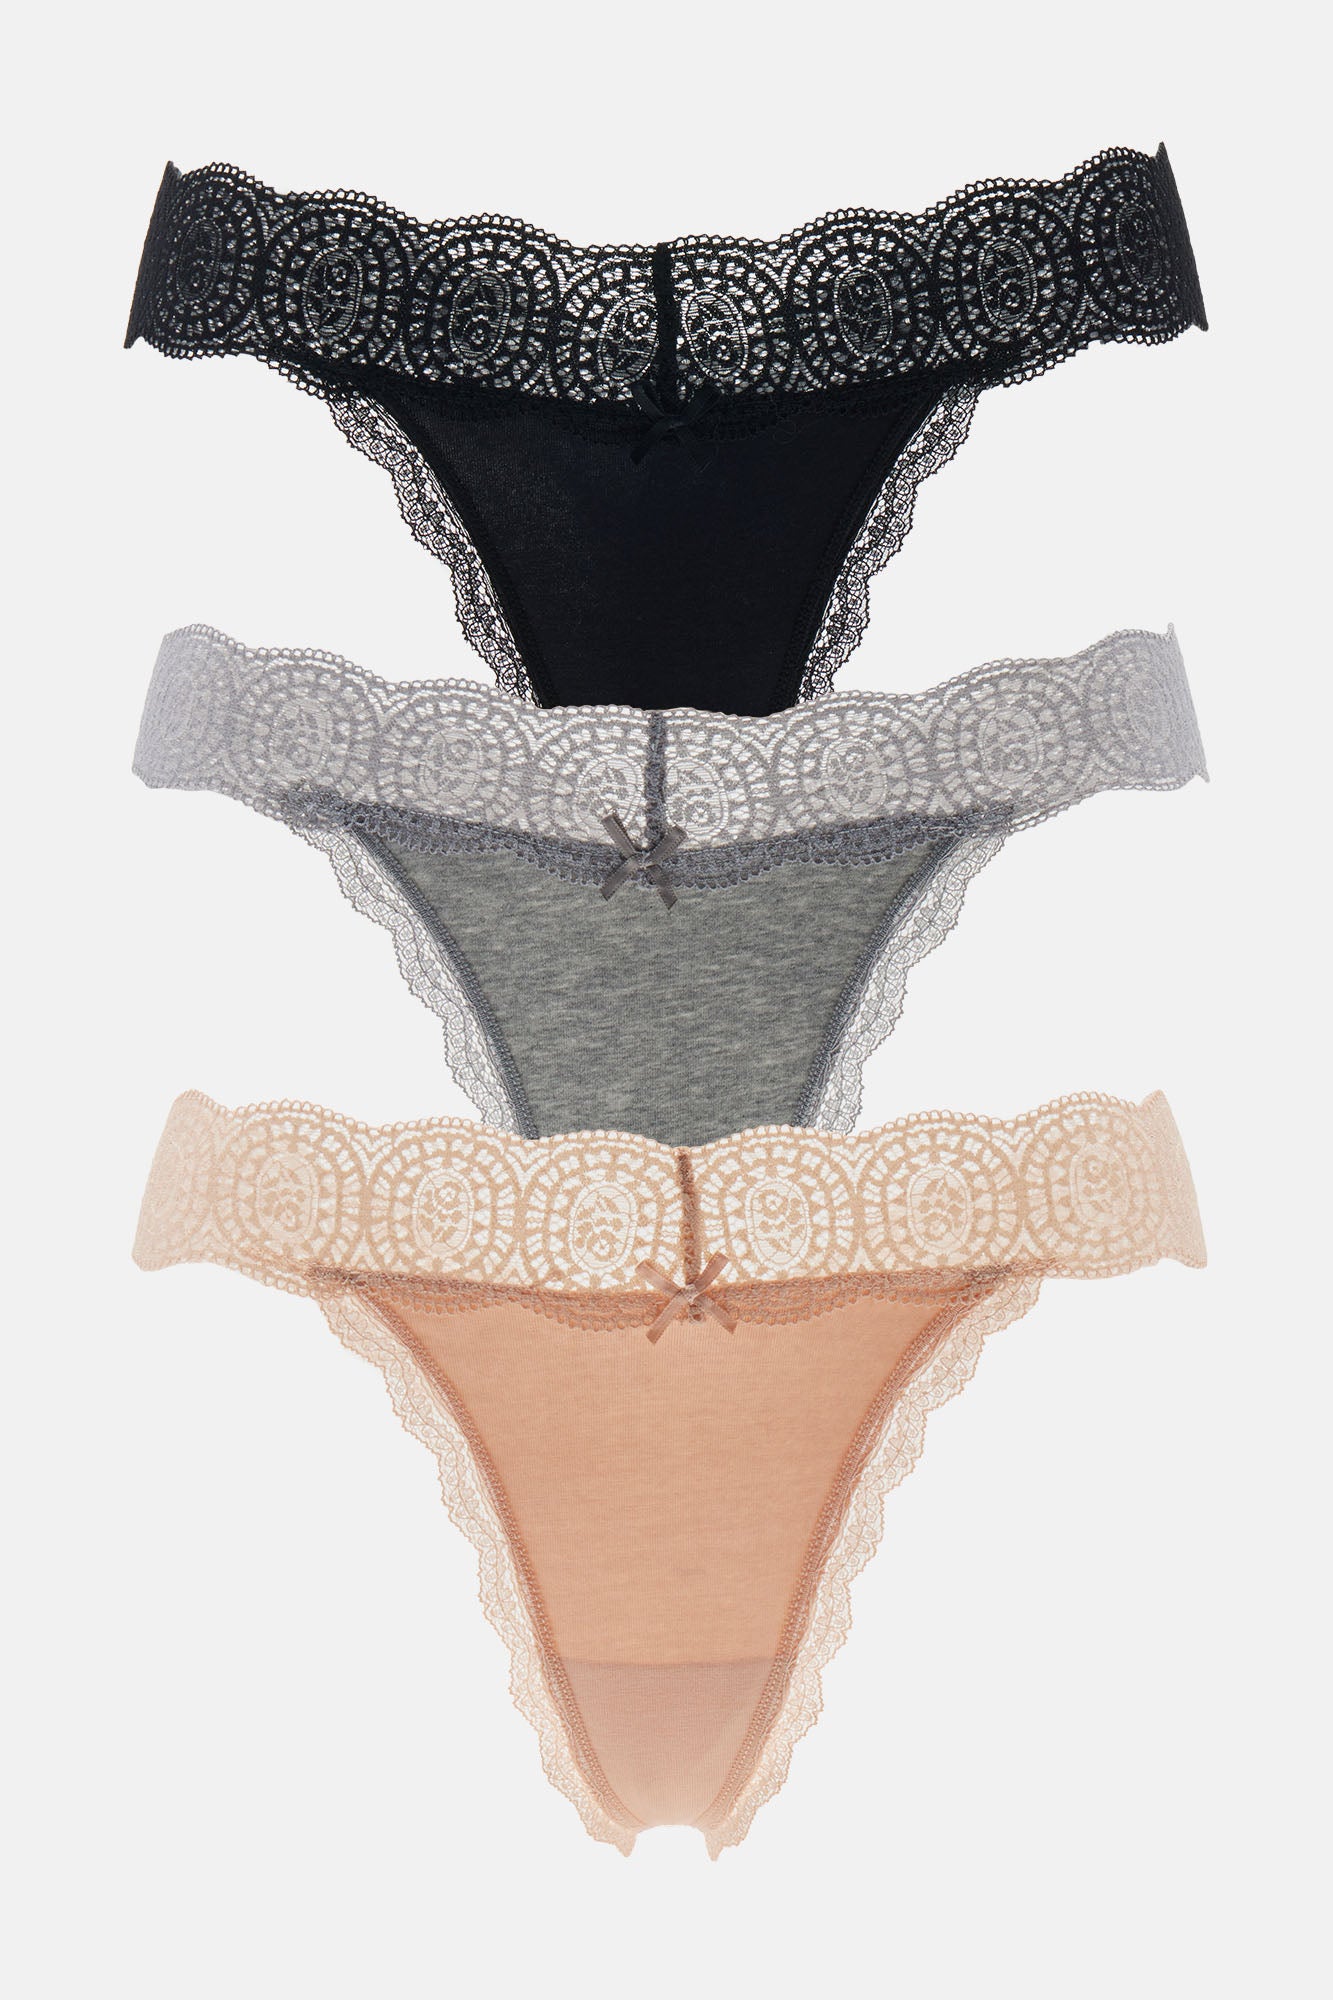 Grey, Women's Thong Panties